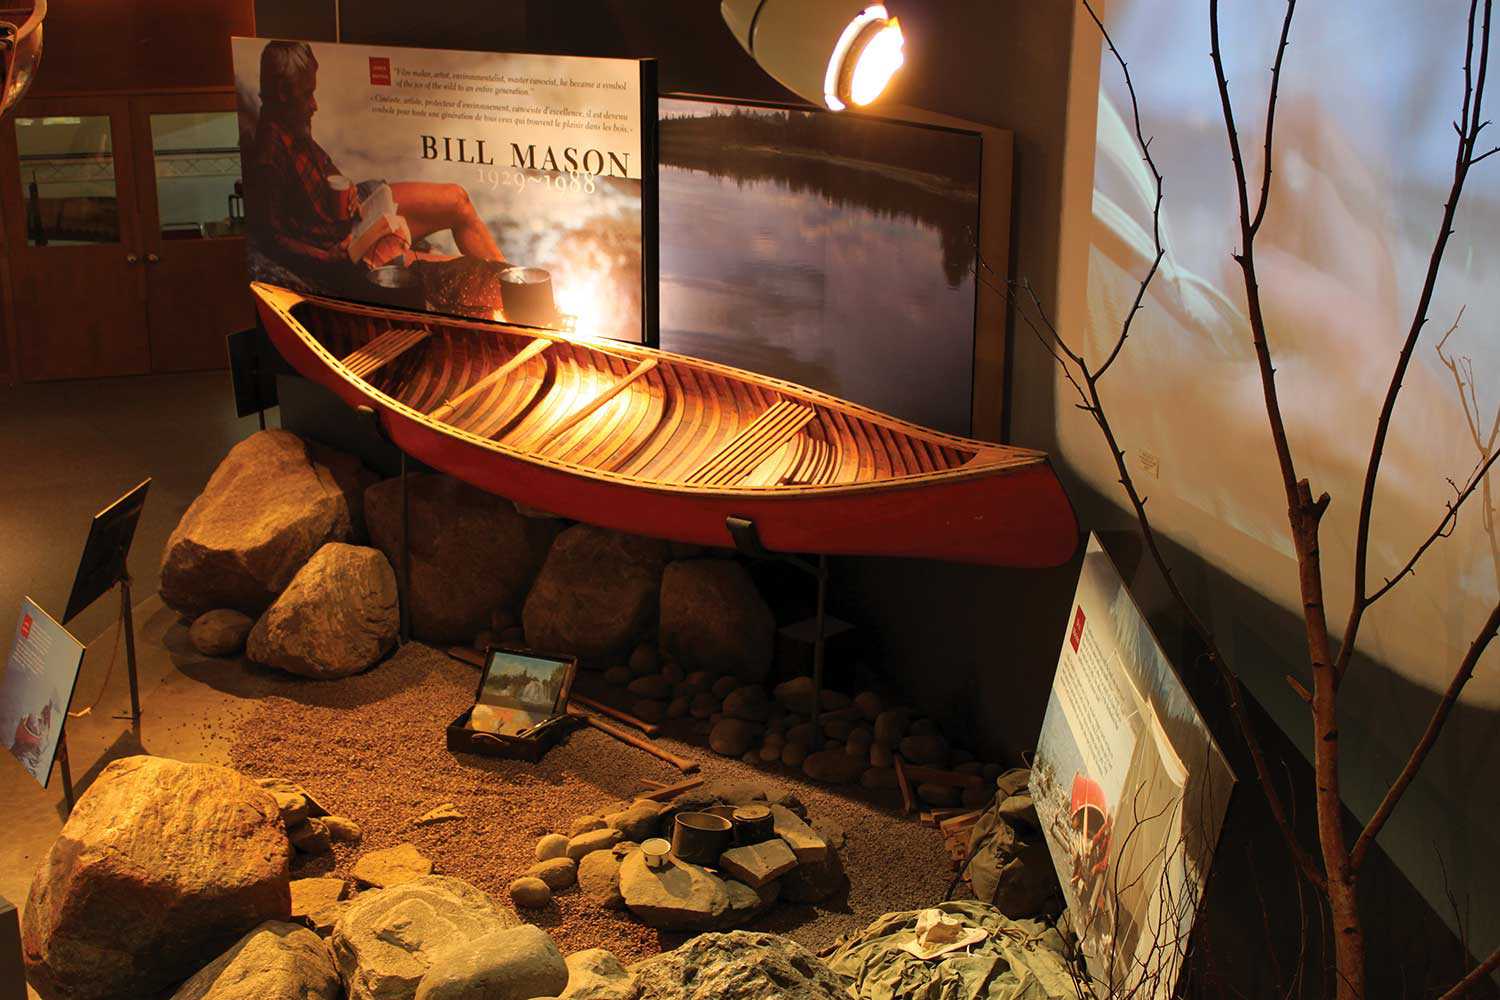 Le canot « Chestnut Prospector » de cèdre recouvert de toile rouge de Bill Mason, légendaire canoéiste, auteur et réalisateur (1929-1988) (Photographie gracieusement fournie par John Summers, Musée canadien du canot)